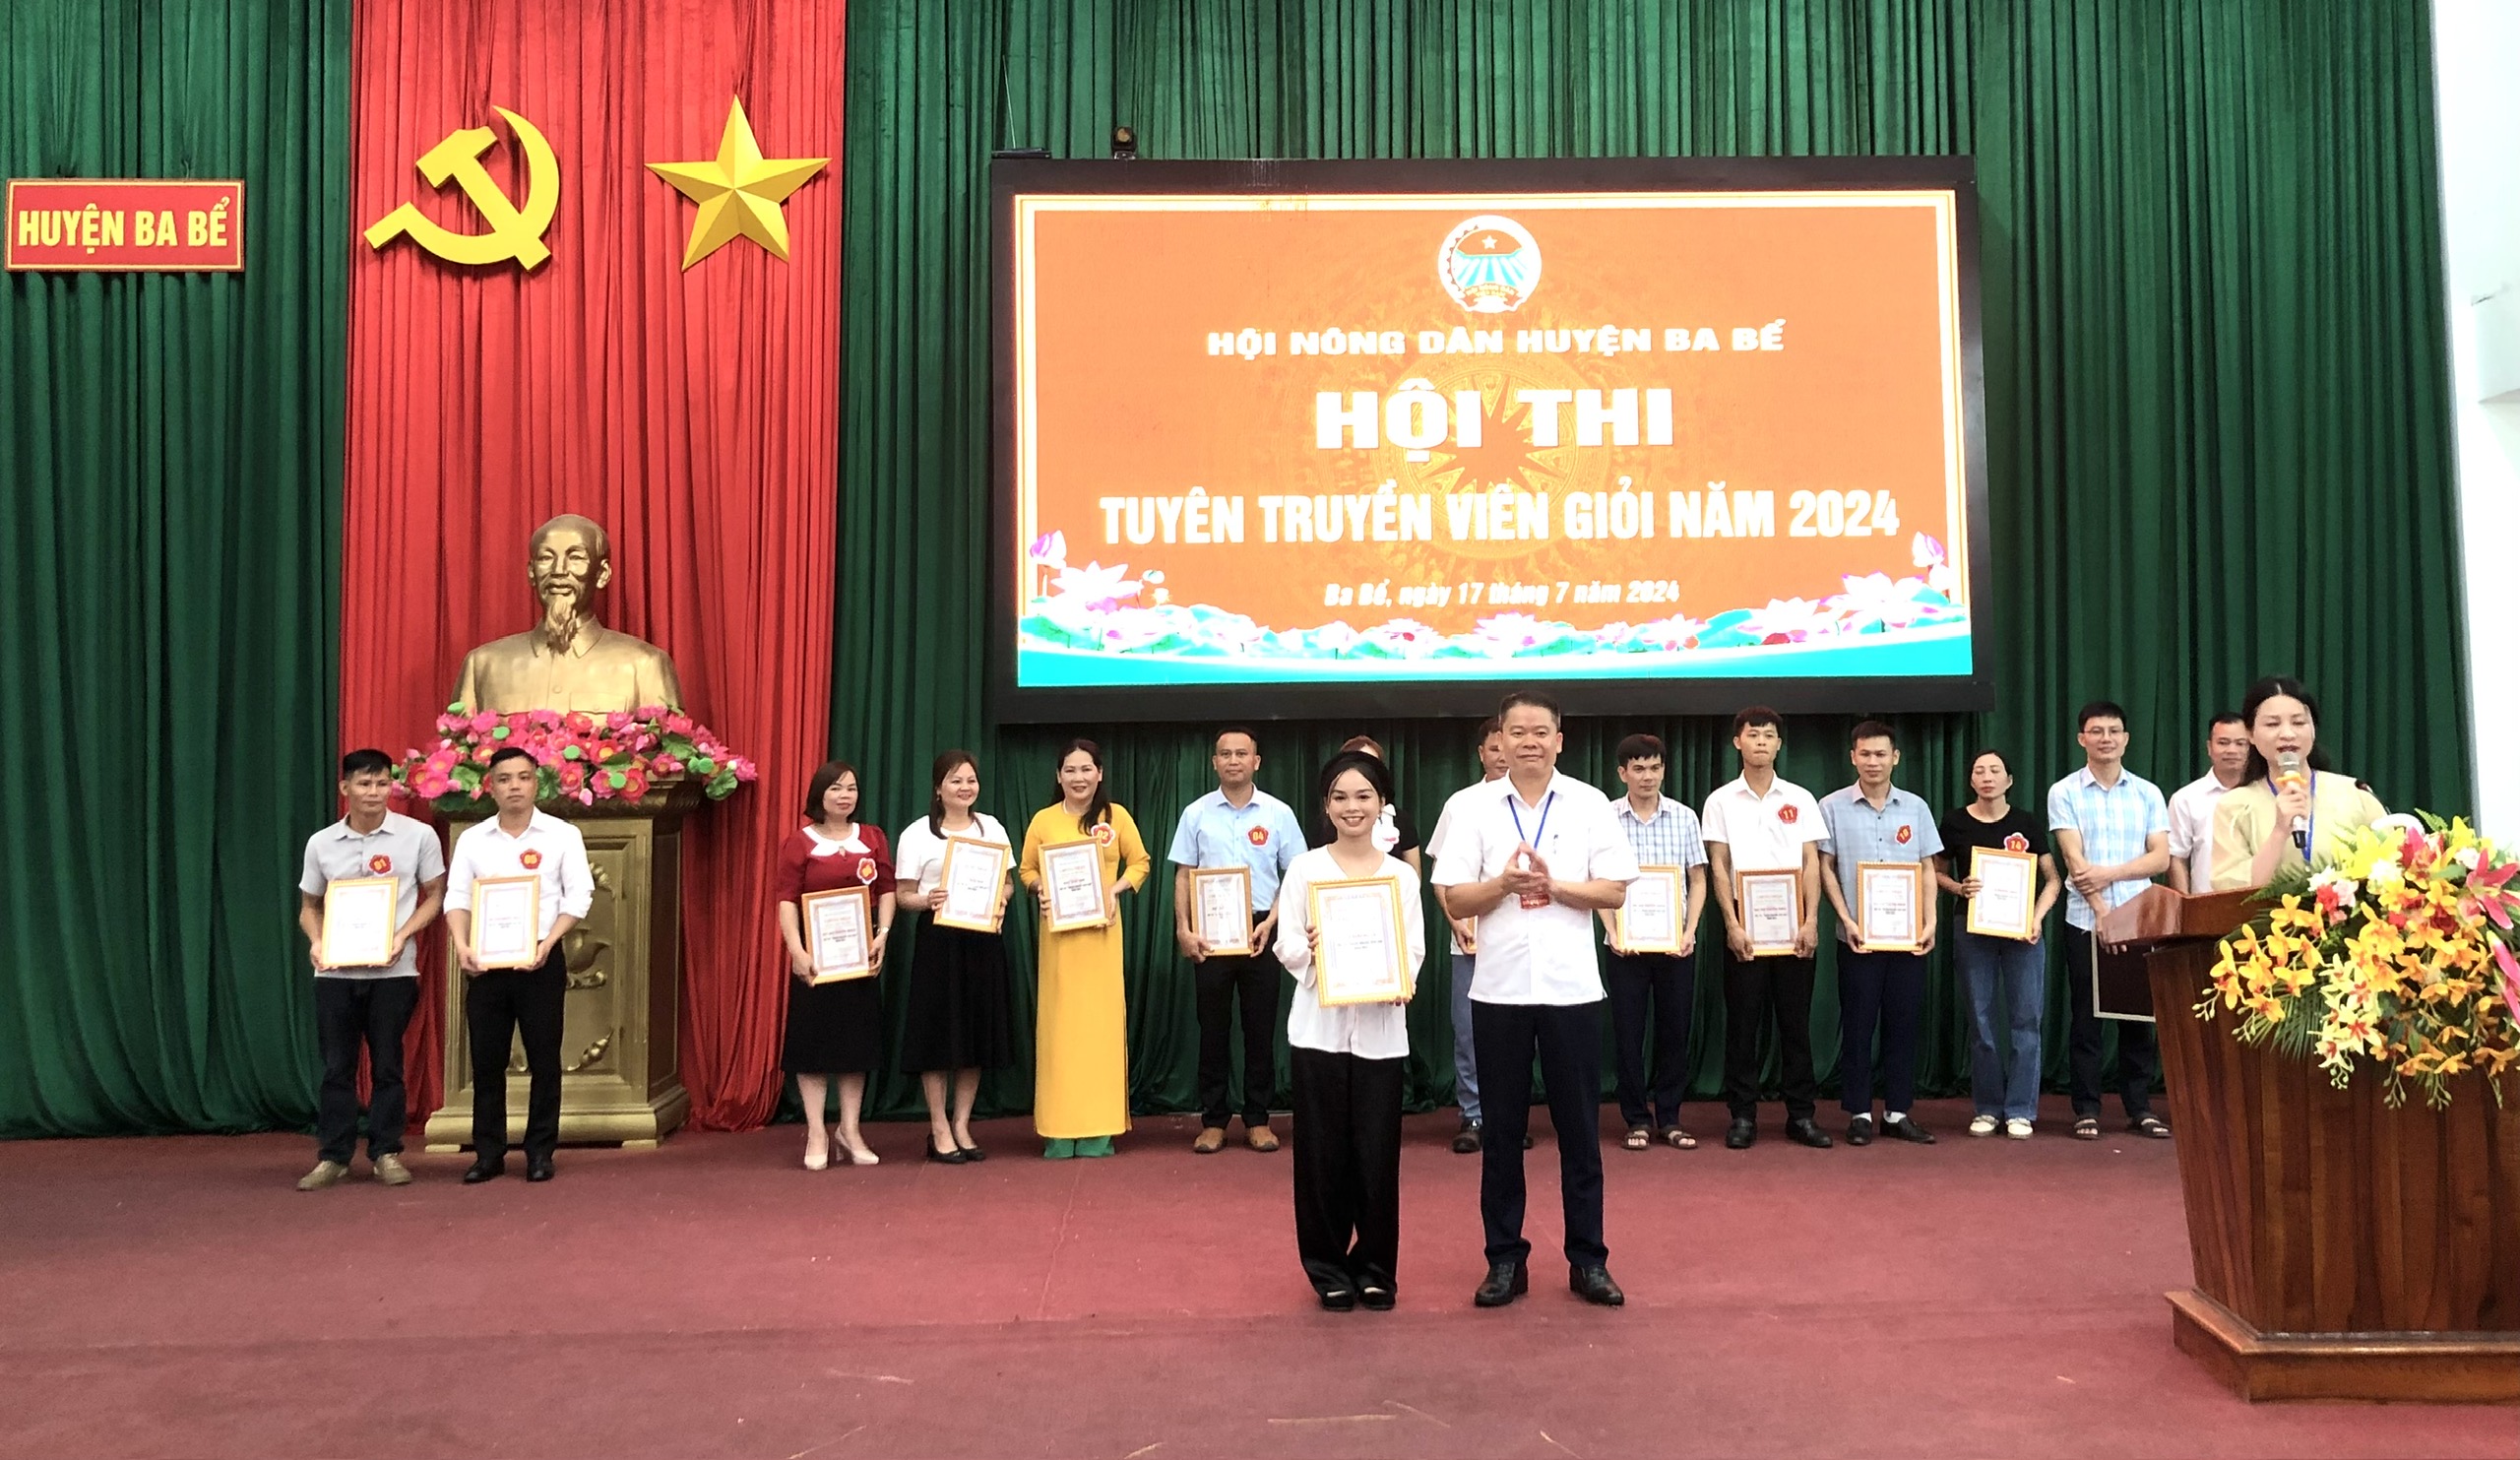 Hội Nông dân huyện Ba Bể tổ chức Hội thi tuyên truyền viên giỏi năm 2024